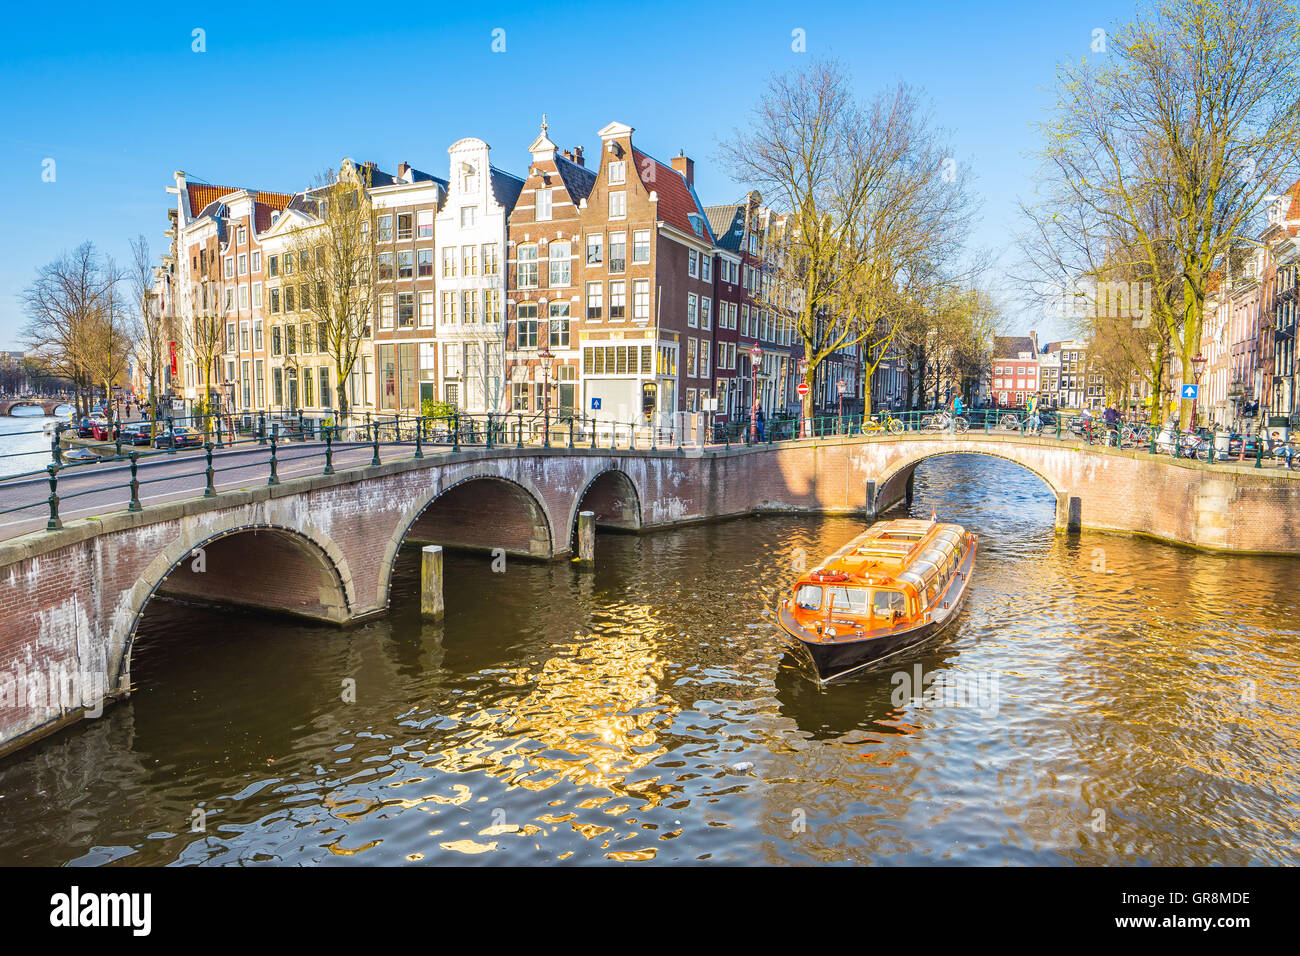 Schöne Aussicht auf die Amsterdamer Grachten mit Brücke und typische Häuser Niederländisch. Stockfoto